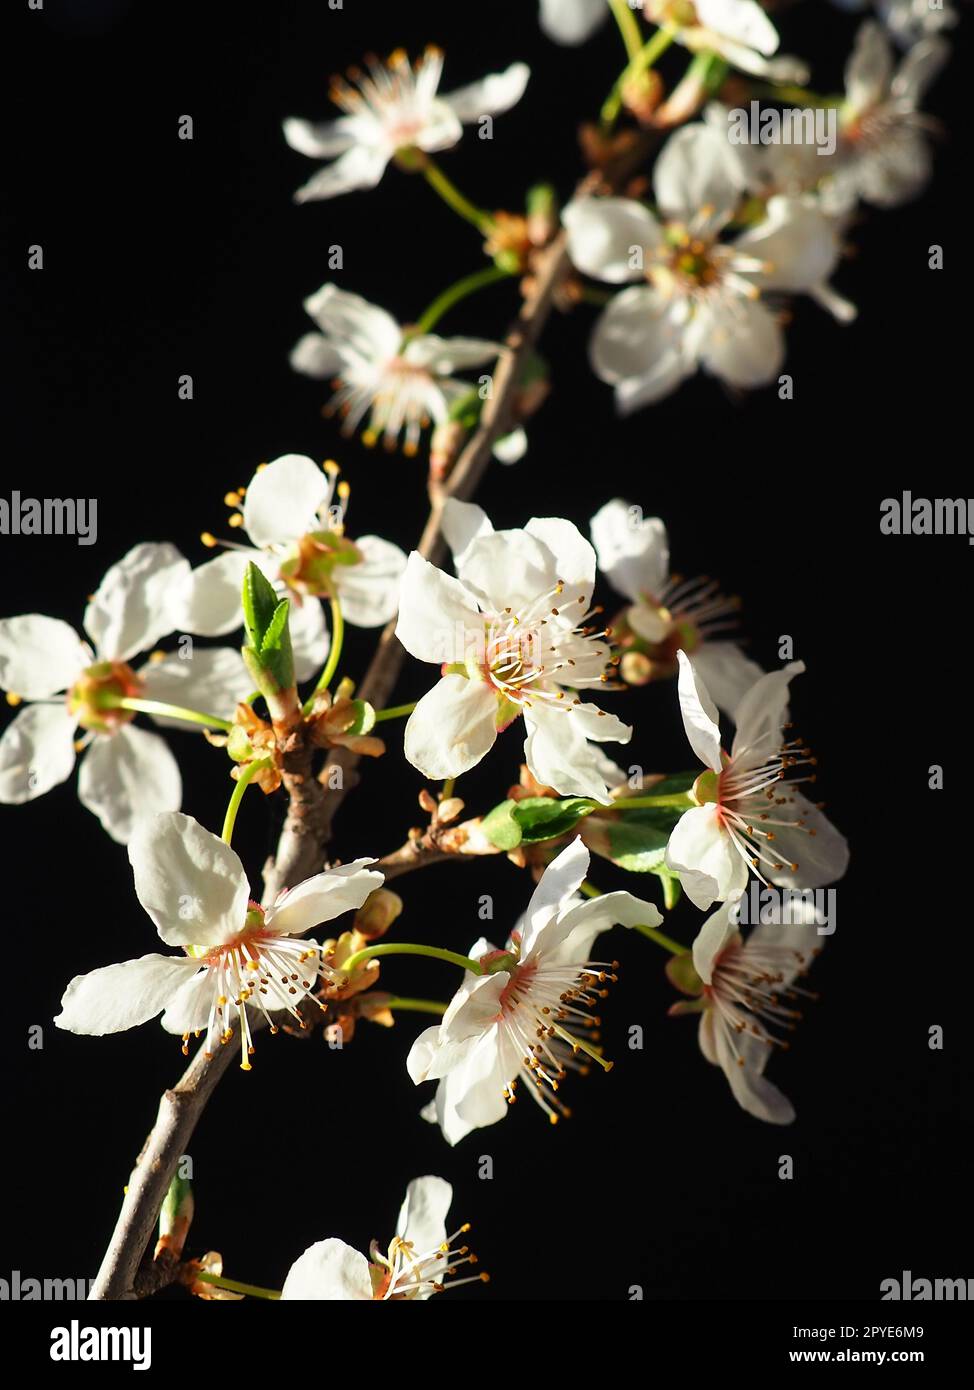 Cerise d'oiseau ou fleurs de cerise sur un fond noir. Gros plan d'une belle branche avec des fleurs blanches. Bouquet de printemps lumineux. Prunus padus, connu sous le nom de cerisier d'oiseau, hackberry, hagberry ou arbre Mayday Banque D'Images